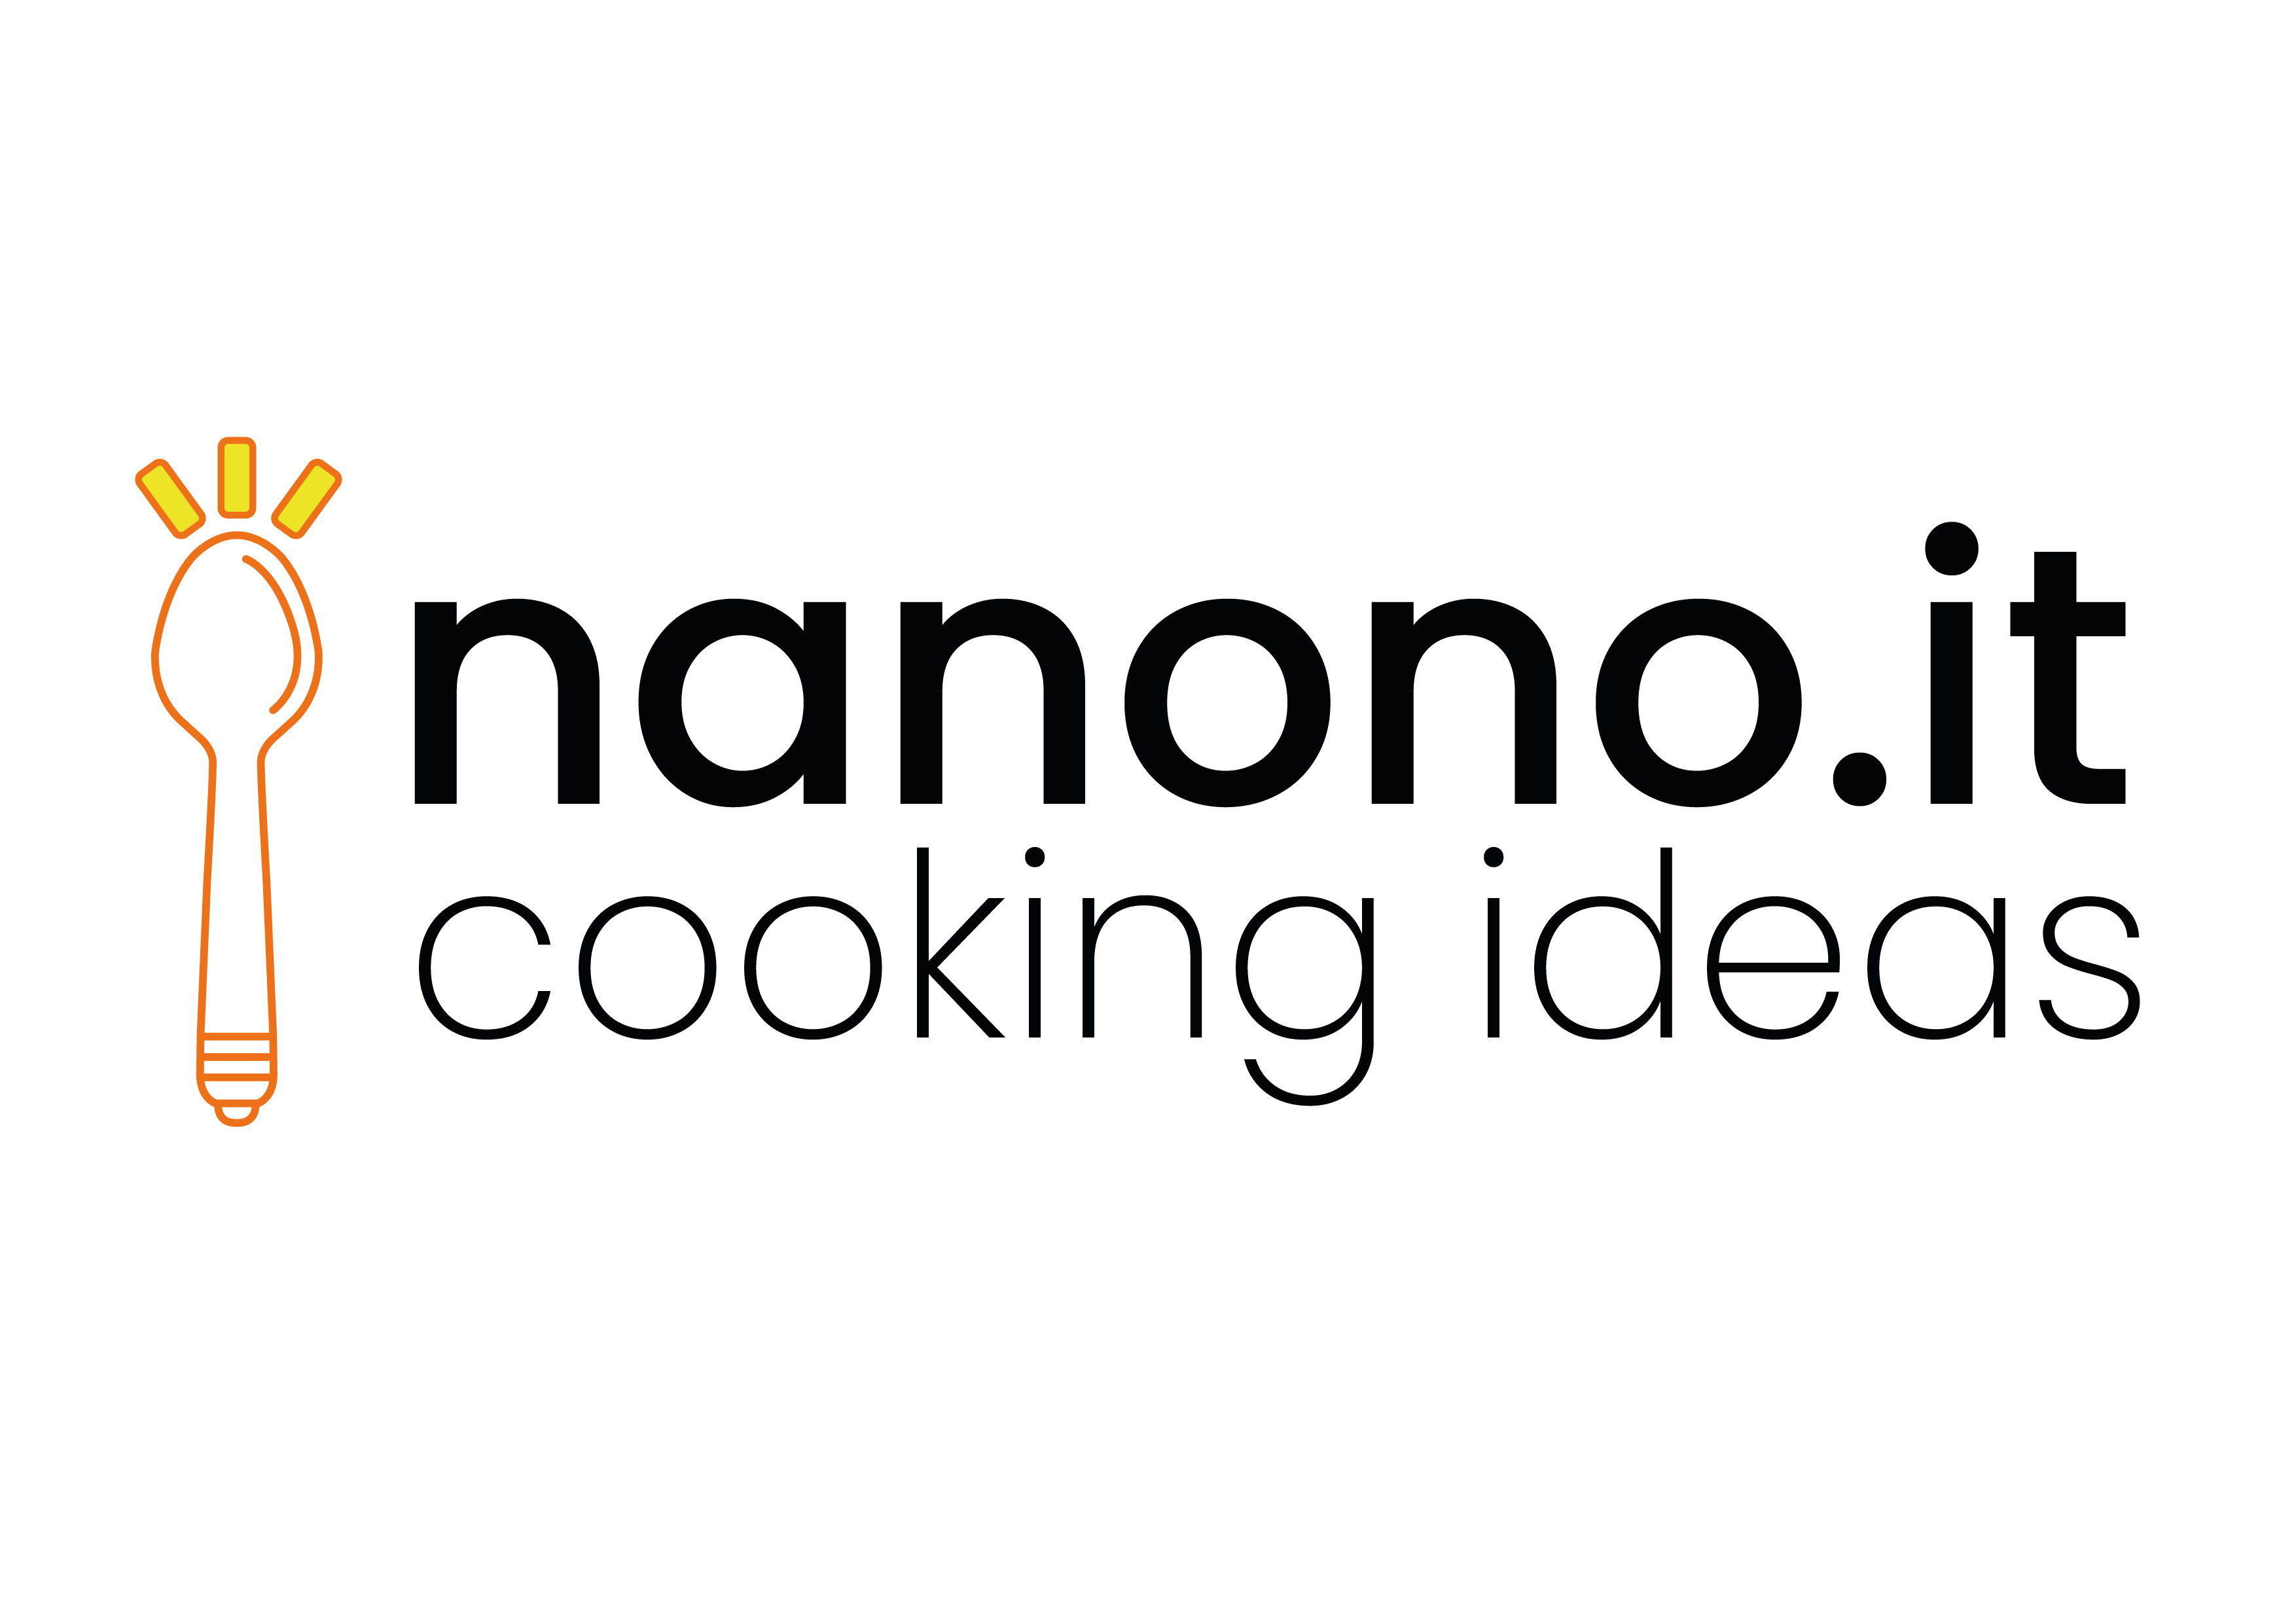 Nanono.it il nuovo blog di cucina e benessere!